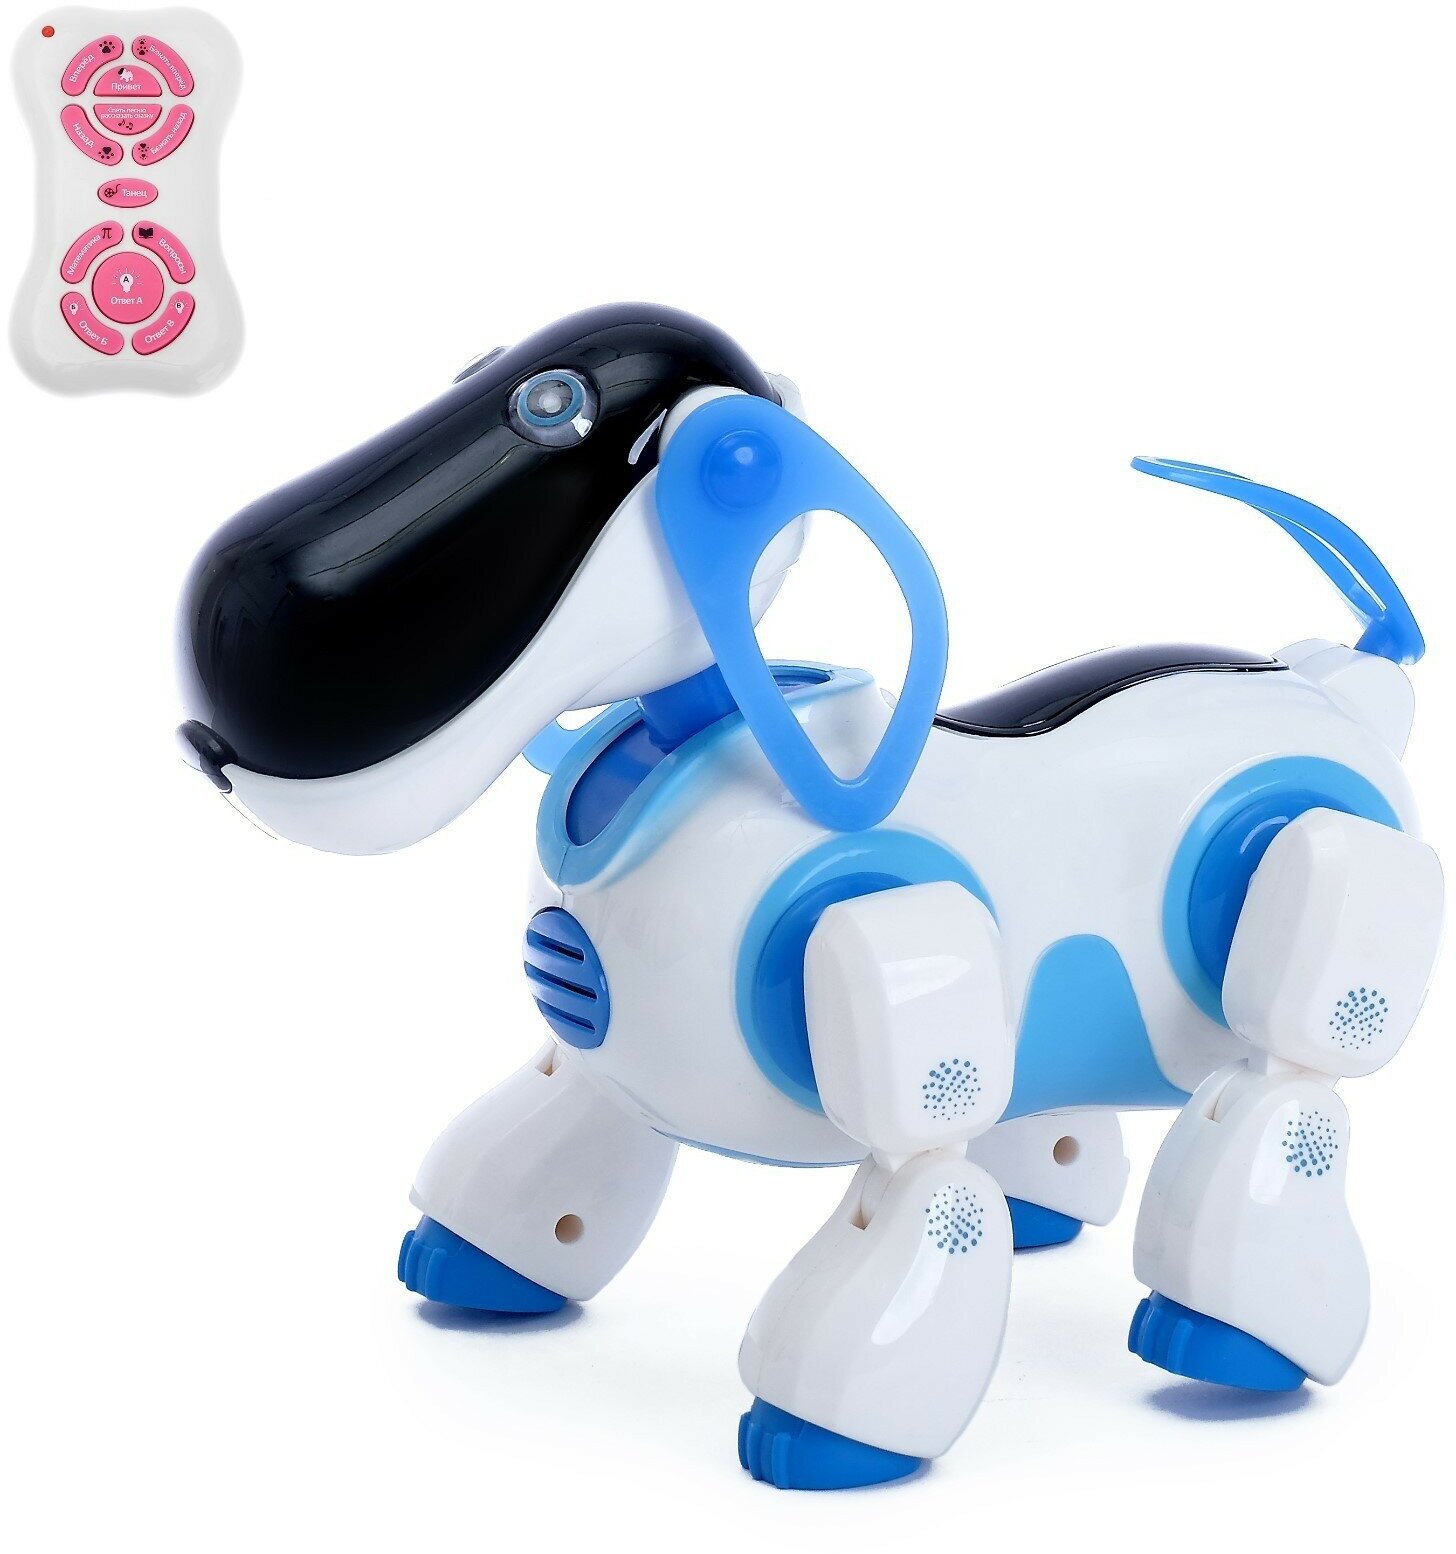 Робот собака «Ки-Ки», программируемый, на пульте управления, интерактивный: звук, свет, танцующий, музыкальный, на батарейках, на русском языке, синий